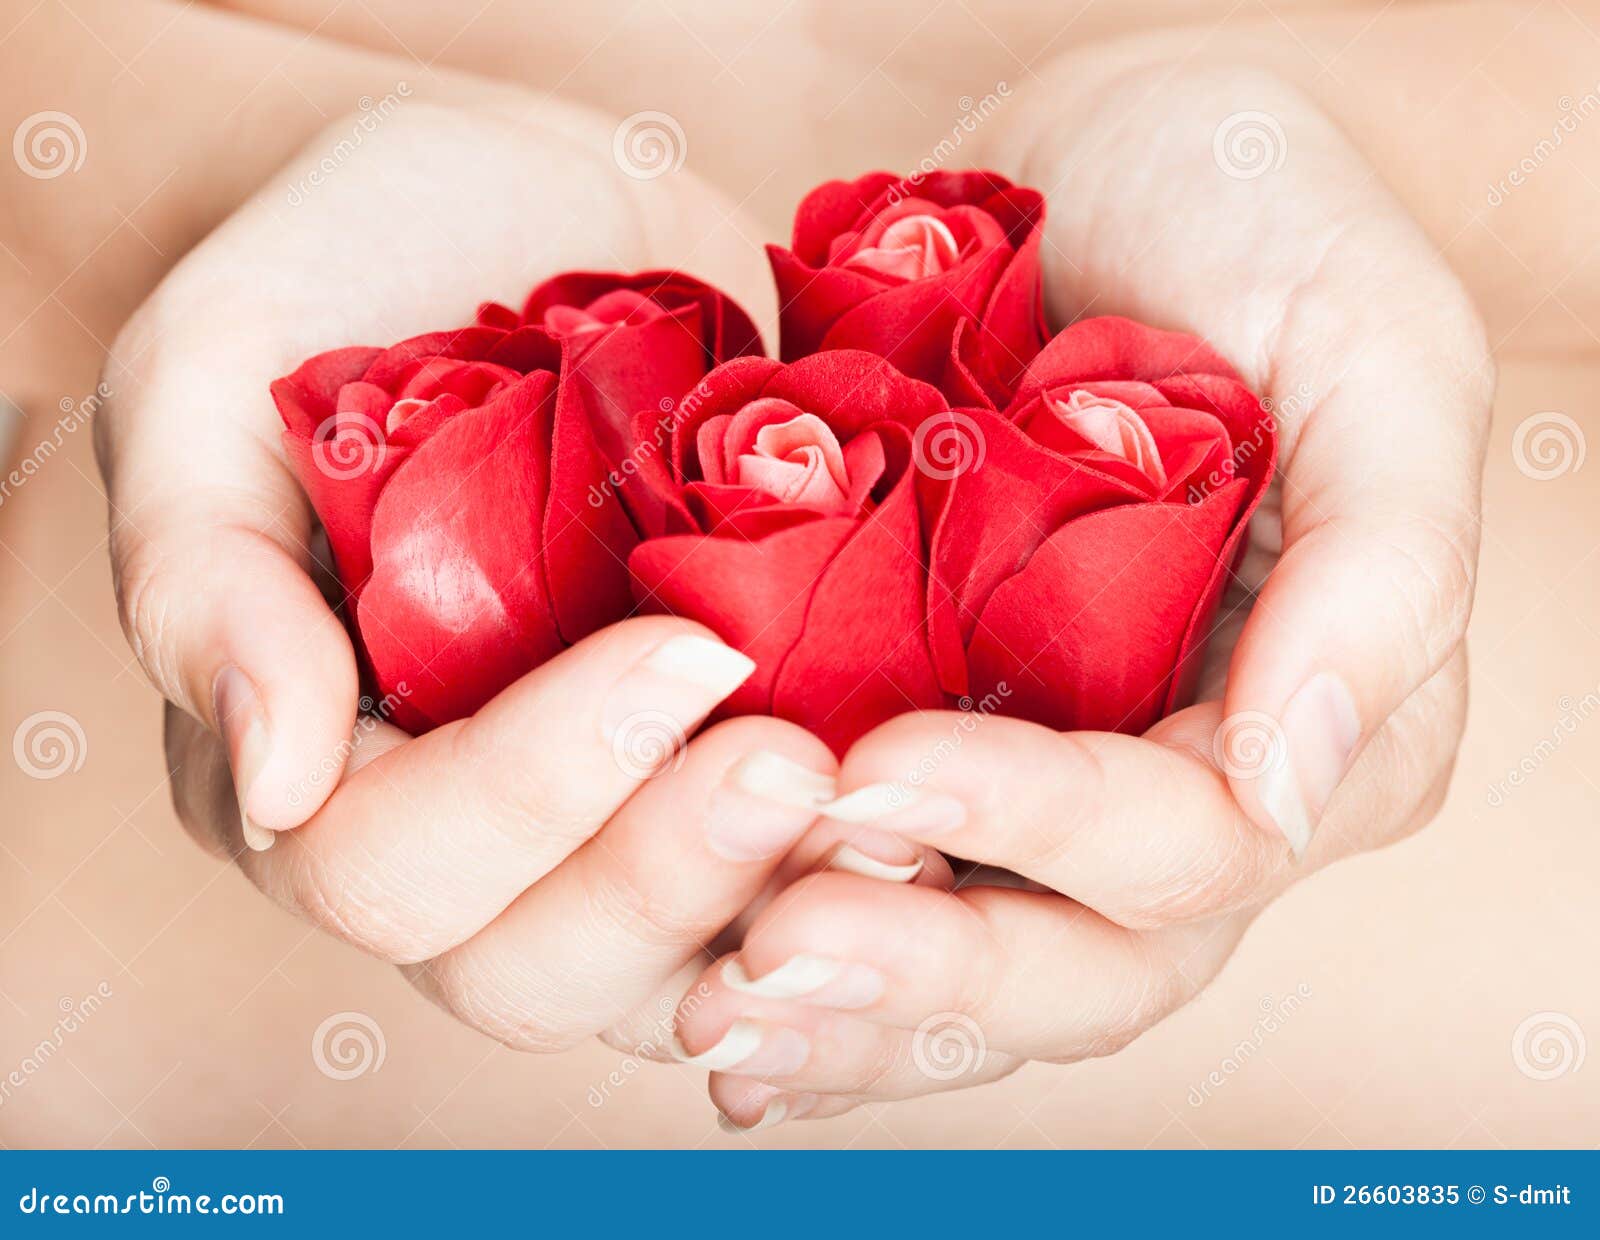 hands are full of rosebuds